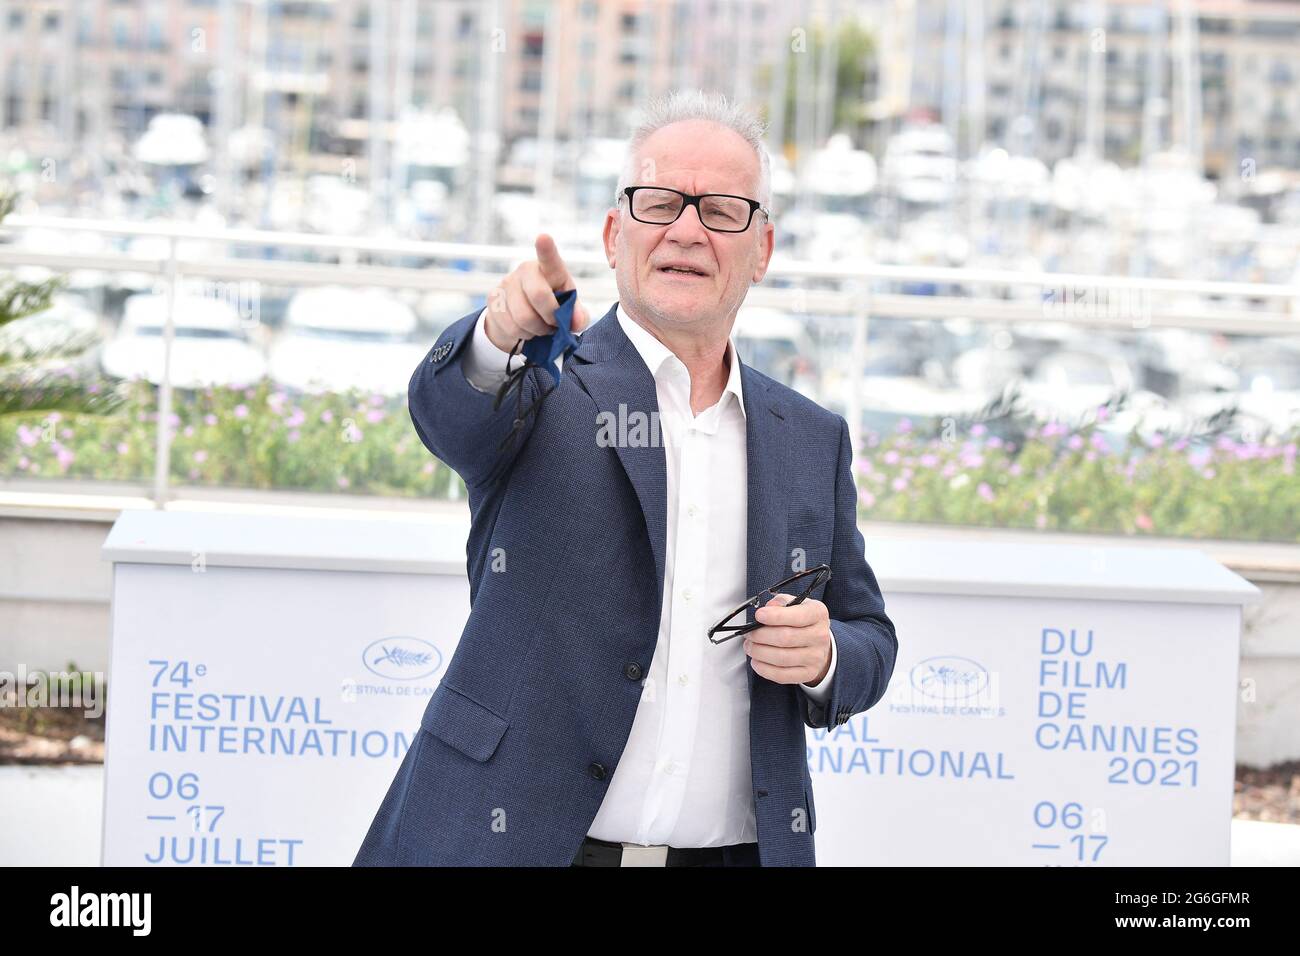 Thierry Fremaux, délégué général du Festival de Cannes, pose à un photocall le 6 juin 2021, à Cannes, en France, en prévision de l'ouverture du 74e Festival du film qui se tiendra du 6 au 17 juillet. Photo de David Niviere/ABACAPRESS.COM Banque D'Images